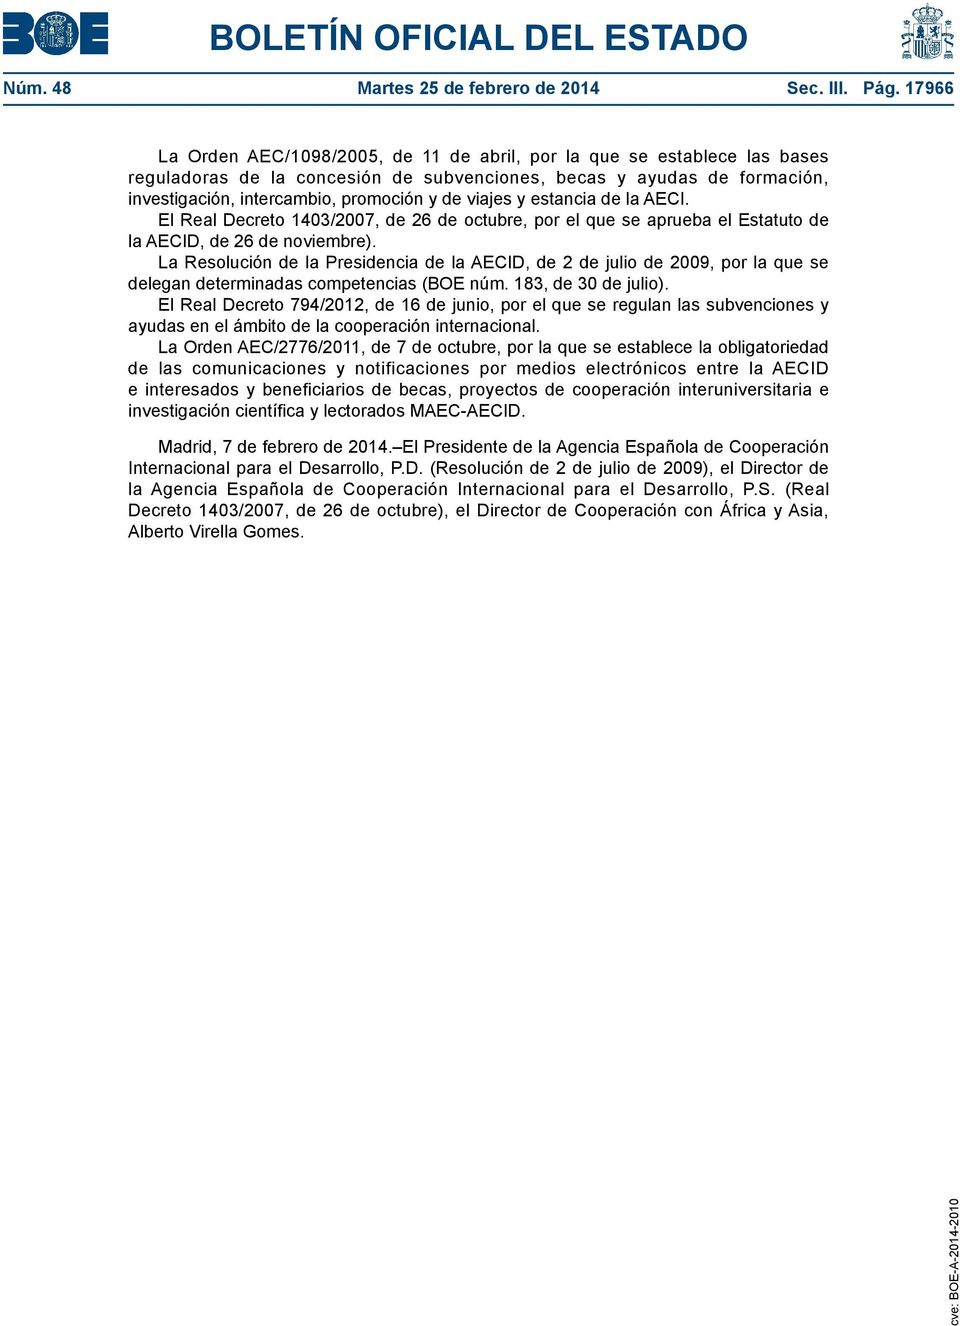 viajes y estancia de la AECI. El Real Decreto 1403/2007, de 26 de octubre, por el que se aprueba el Estatuto de la AECID, de 26 de noviembre).